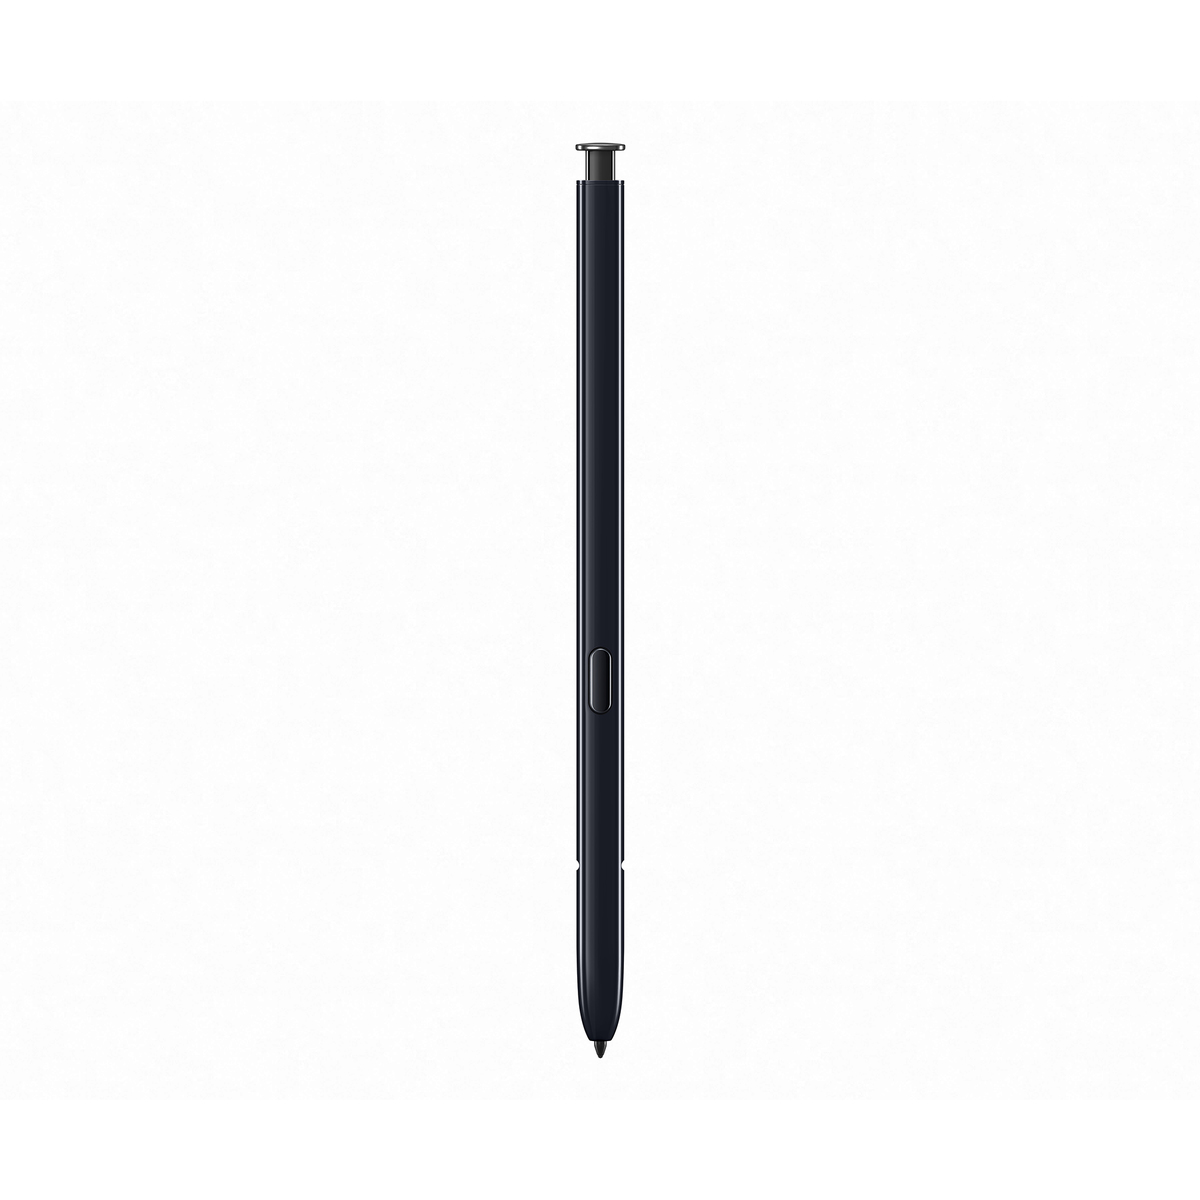 Samsung Galaxy Note10 SMN970F 256GB Aura Black